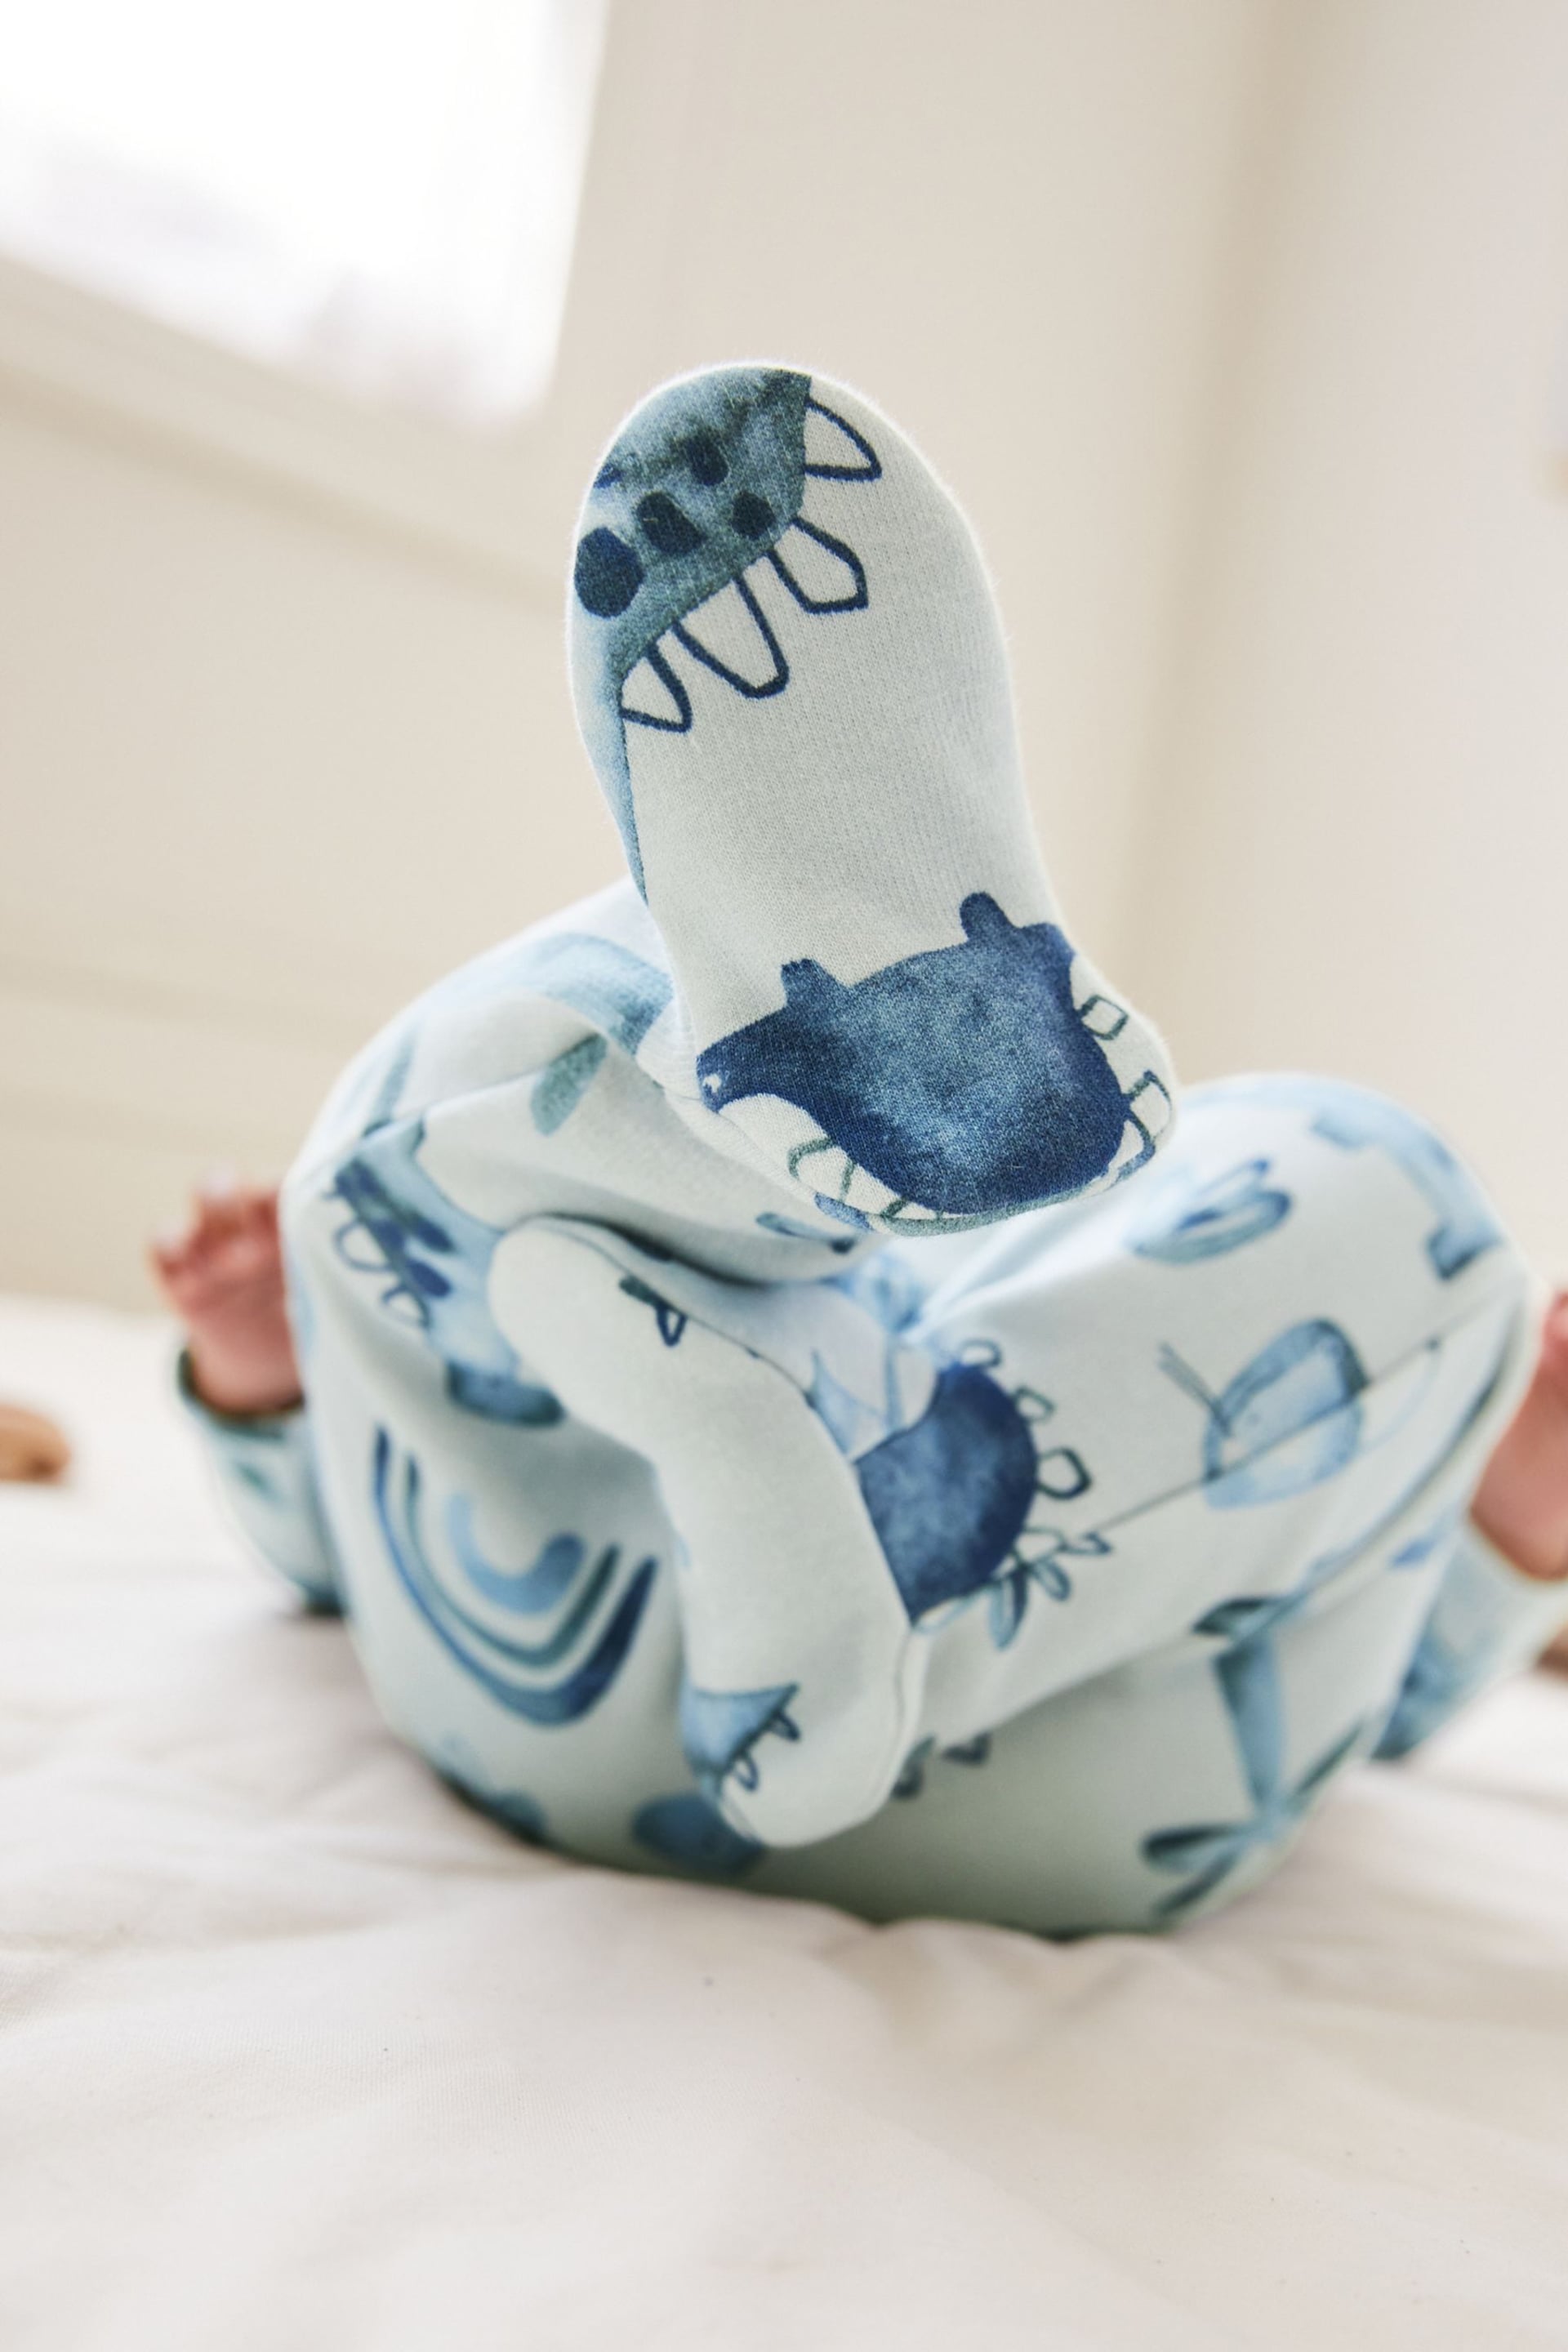 Blue Fleece Lined Baby Sleepsuit - Image 3 of 5